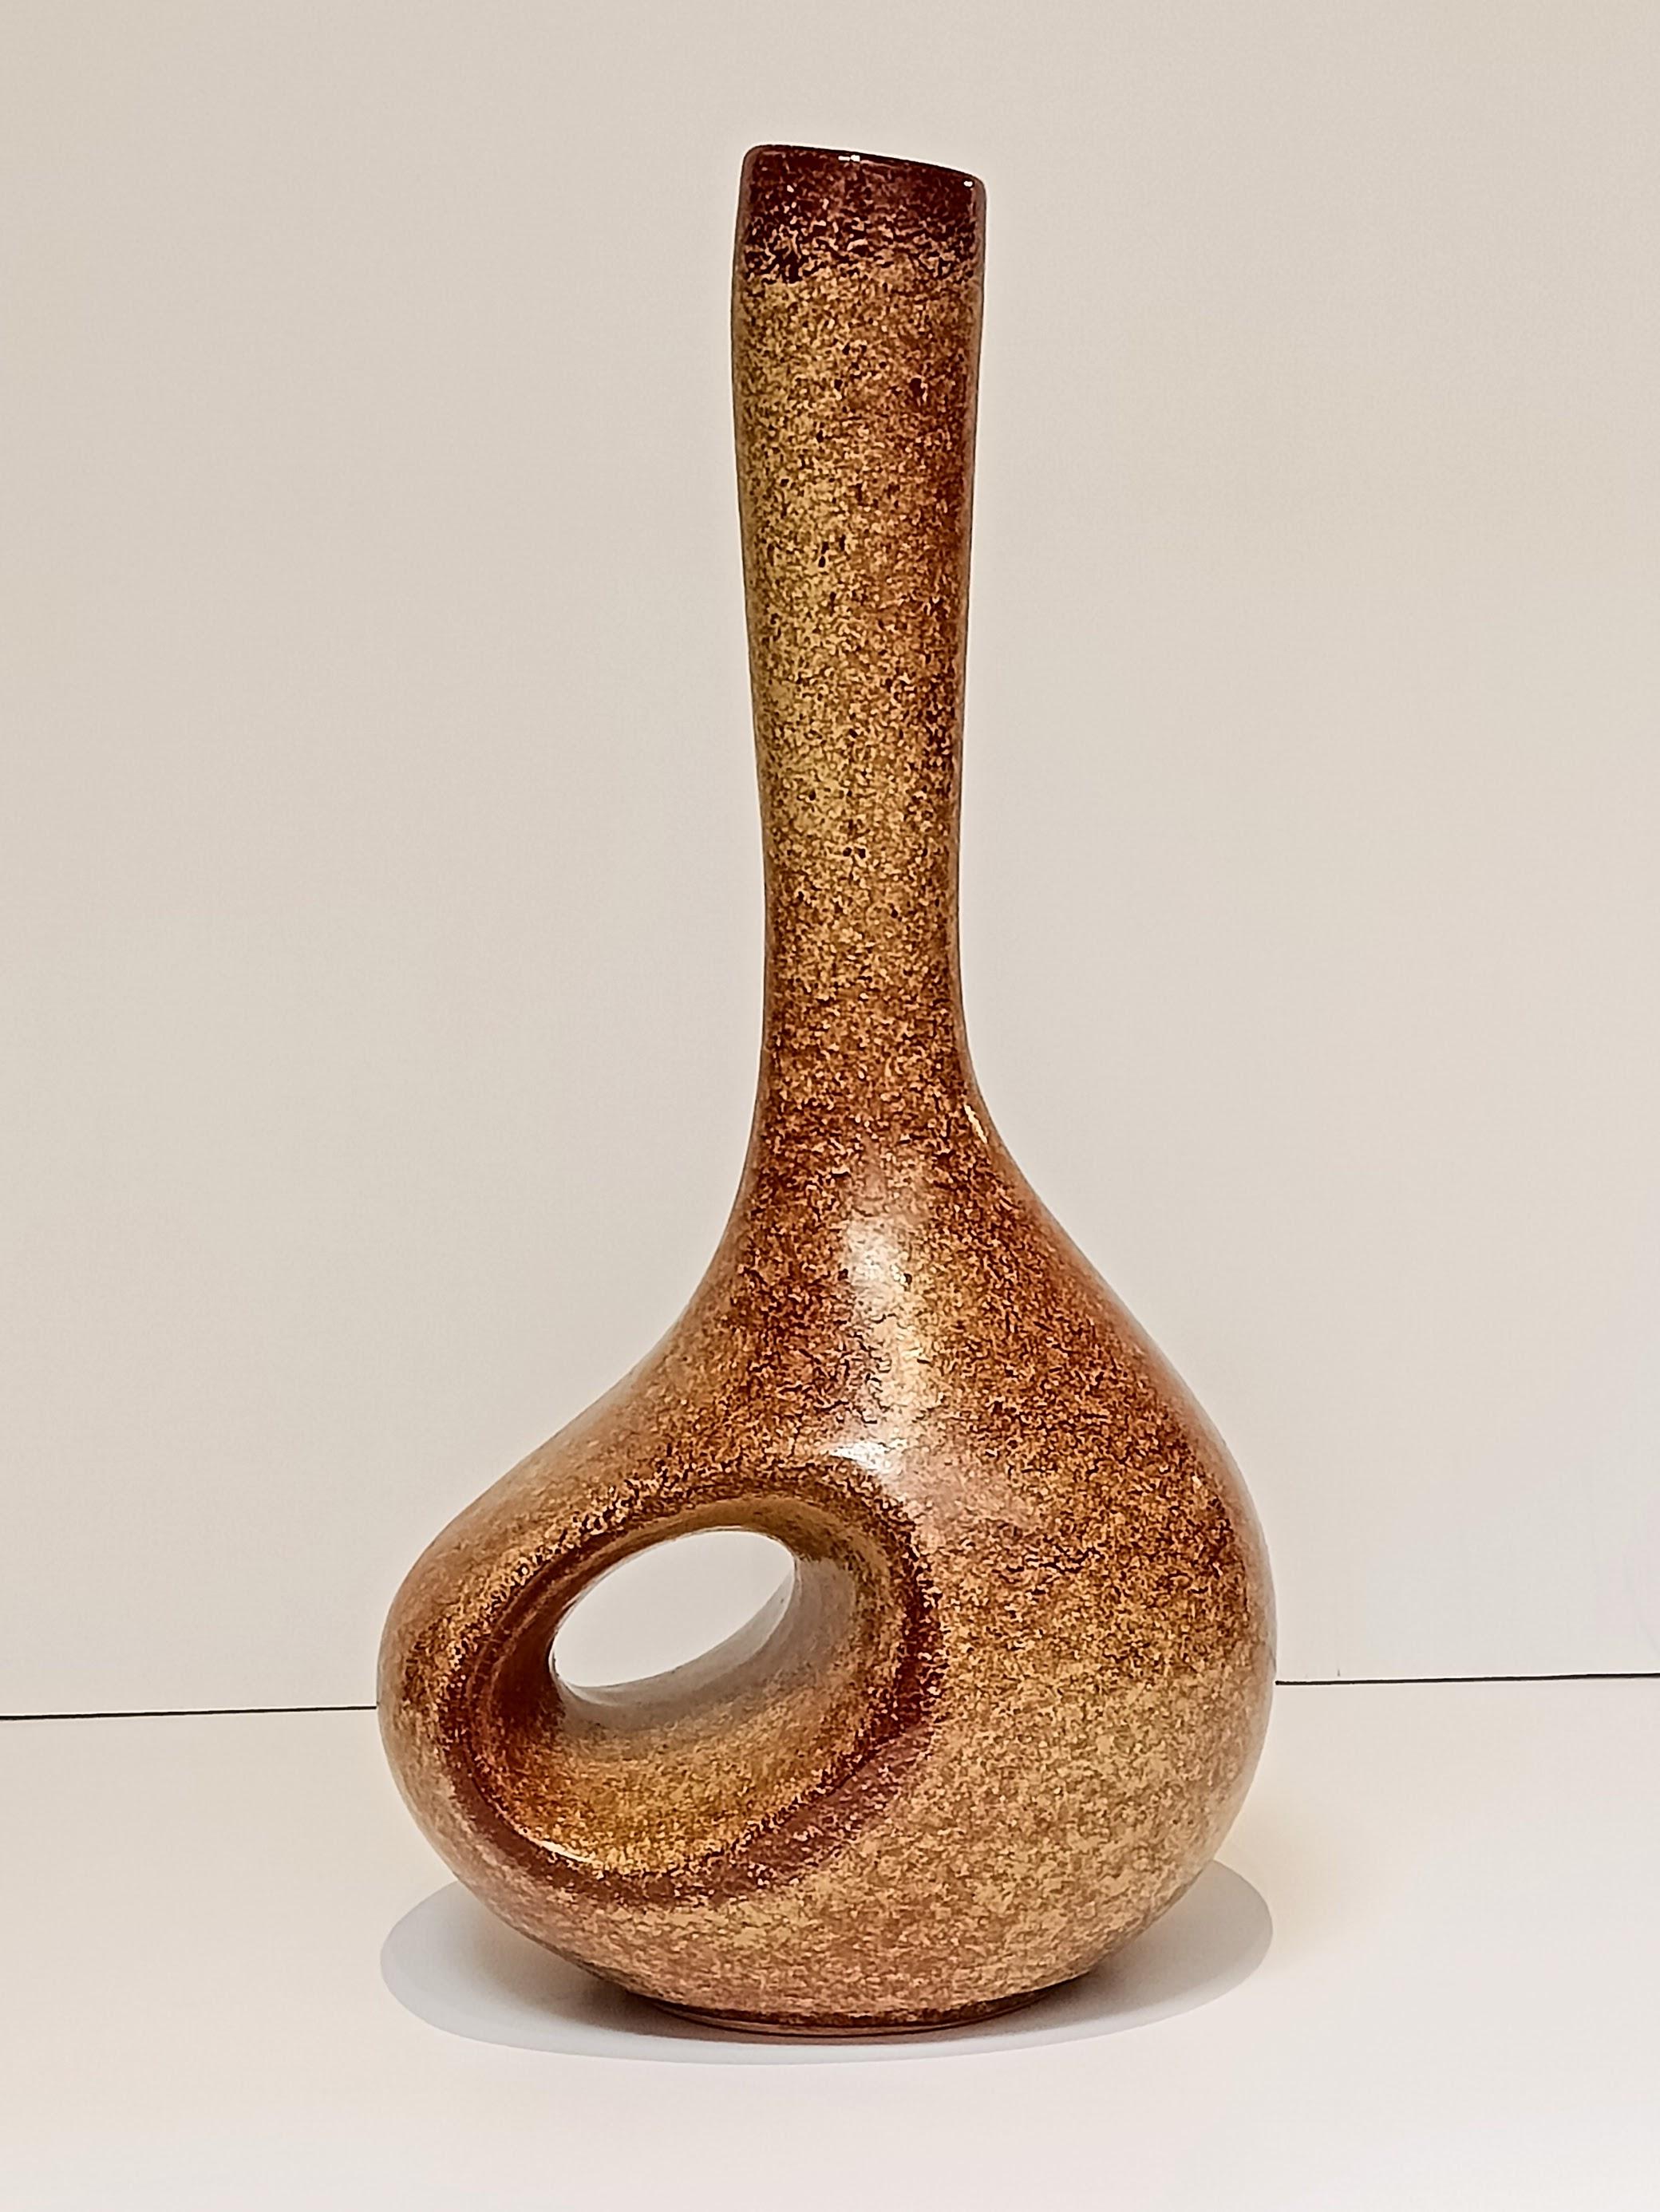 Vase sculptural en céramique de style cheminée, datant du milieu du siècle dernier, réalisé par Roberto Rigon pour Bertoncello Ceramiche. Cette pièce, qui présente la couleur tachetée classique du tabac, est marquée d'un numéro de code et a été